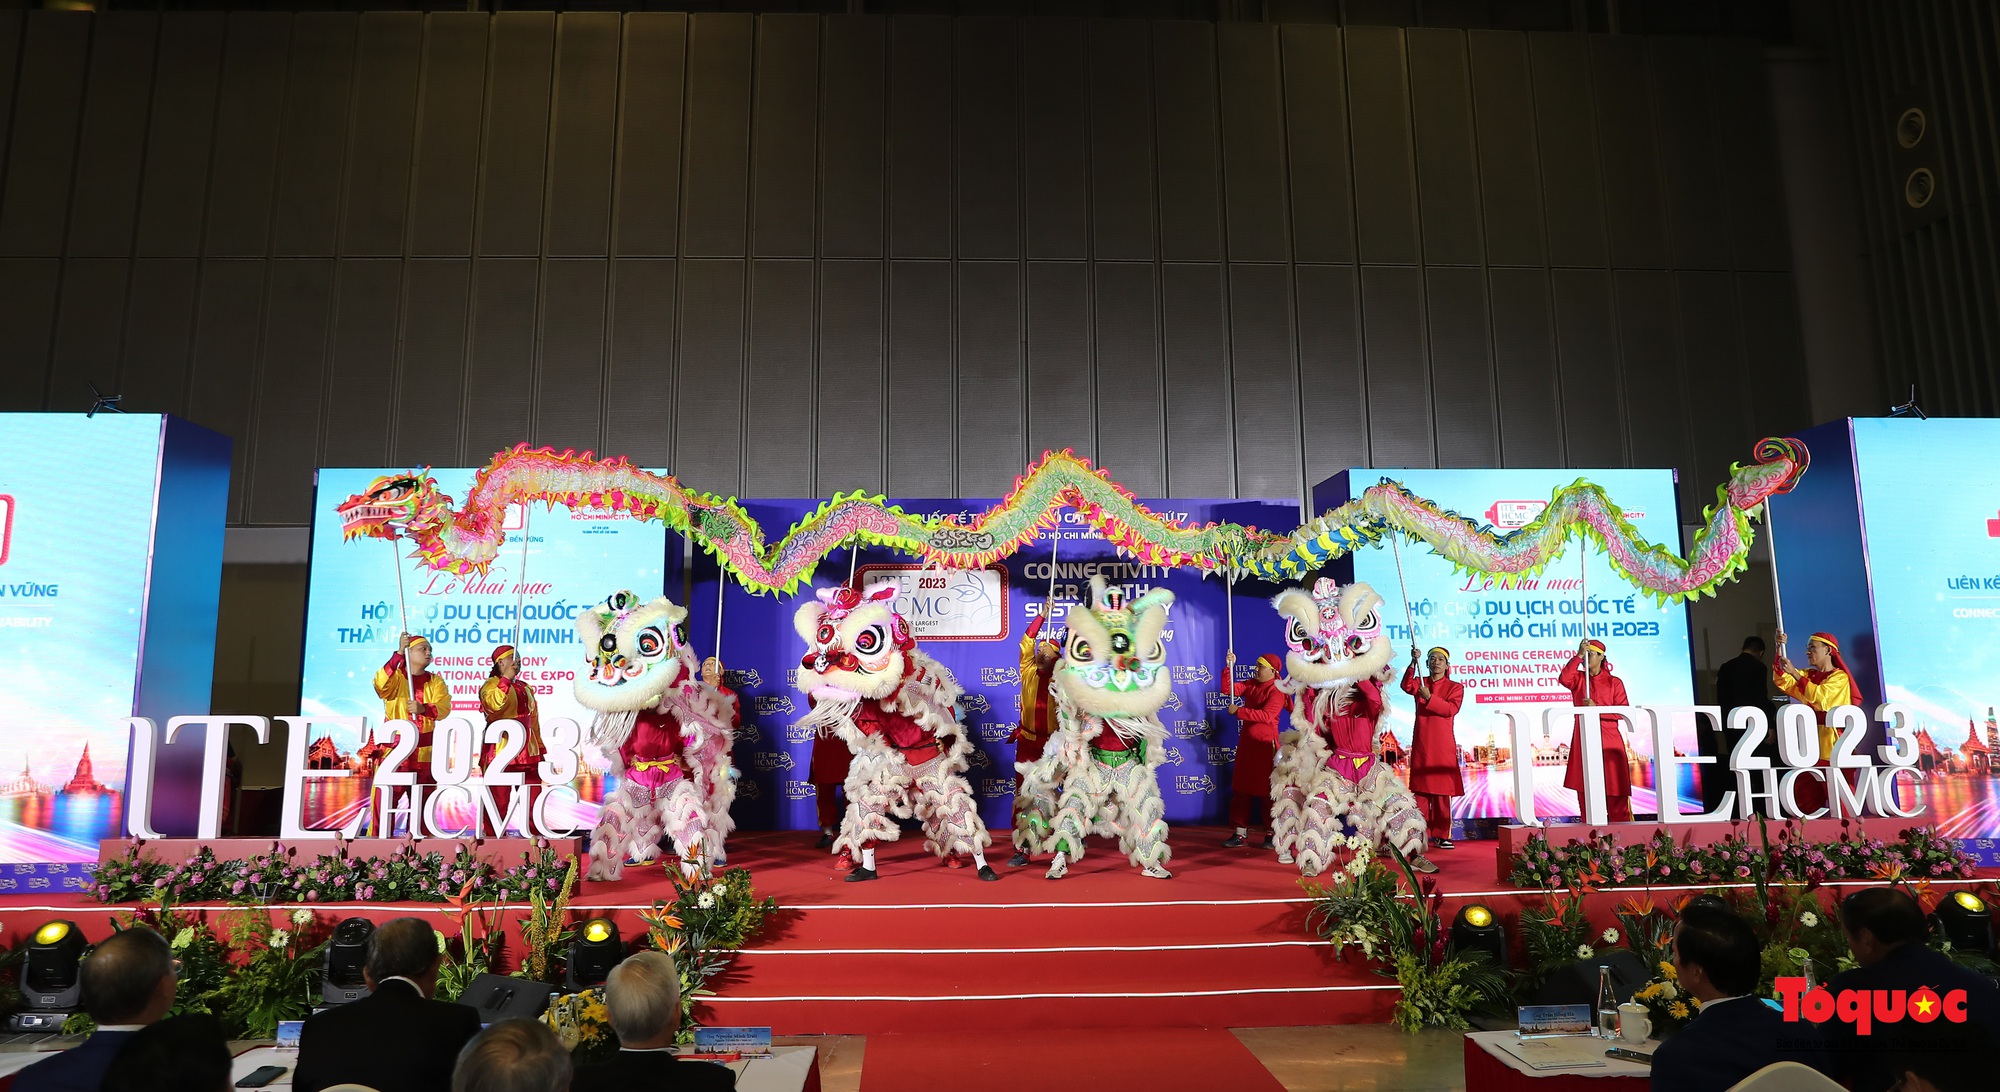 Chùm ảnh: Khai mạc Hội chợ Du lịch Quốc tế TP Hồ Chí Minh lần thứ 17 - Ảnh 1.